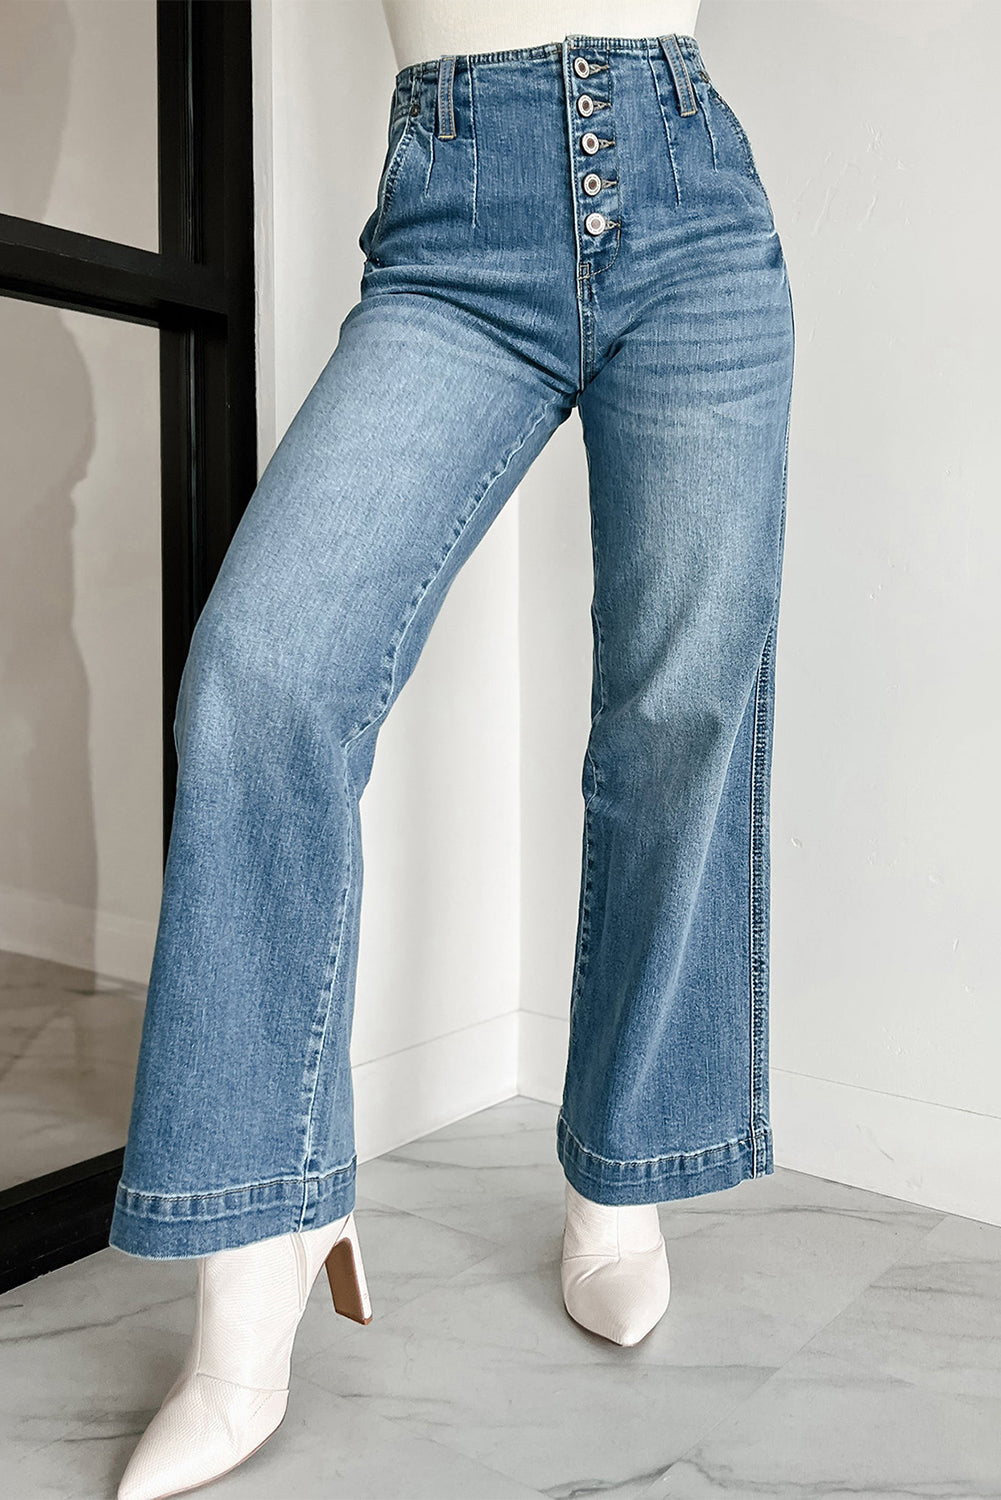 Dunkelblaue Jeans mit mehreren Knöpfen in mittlerer Waschung und geradem, lockerem Bein